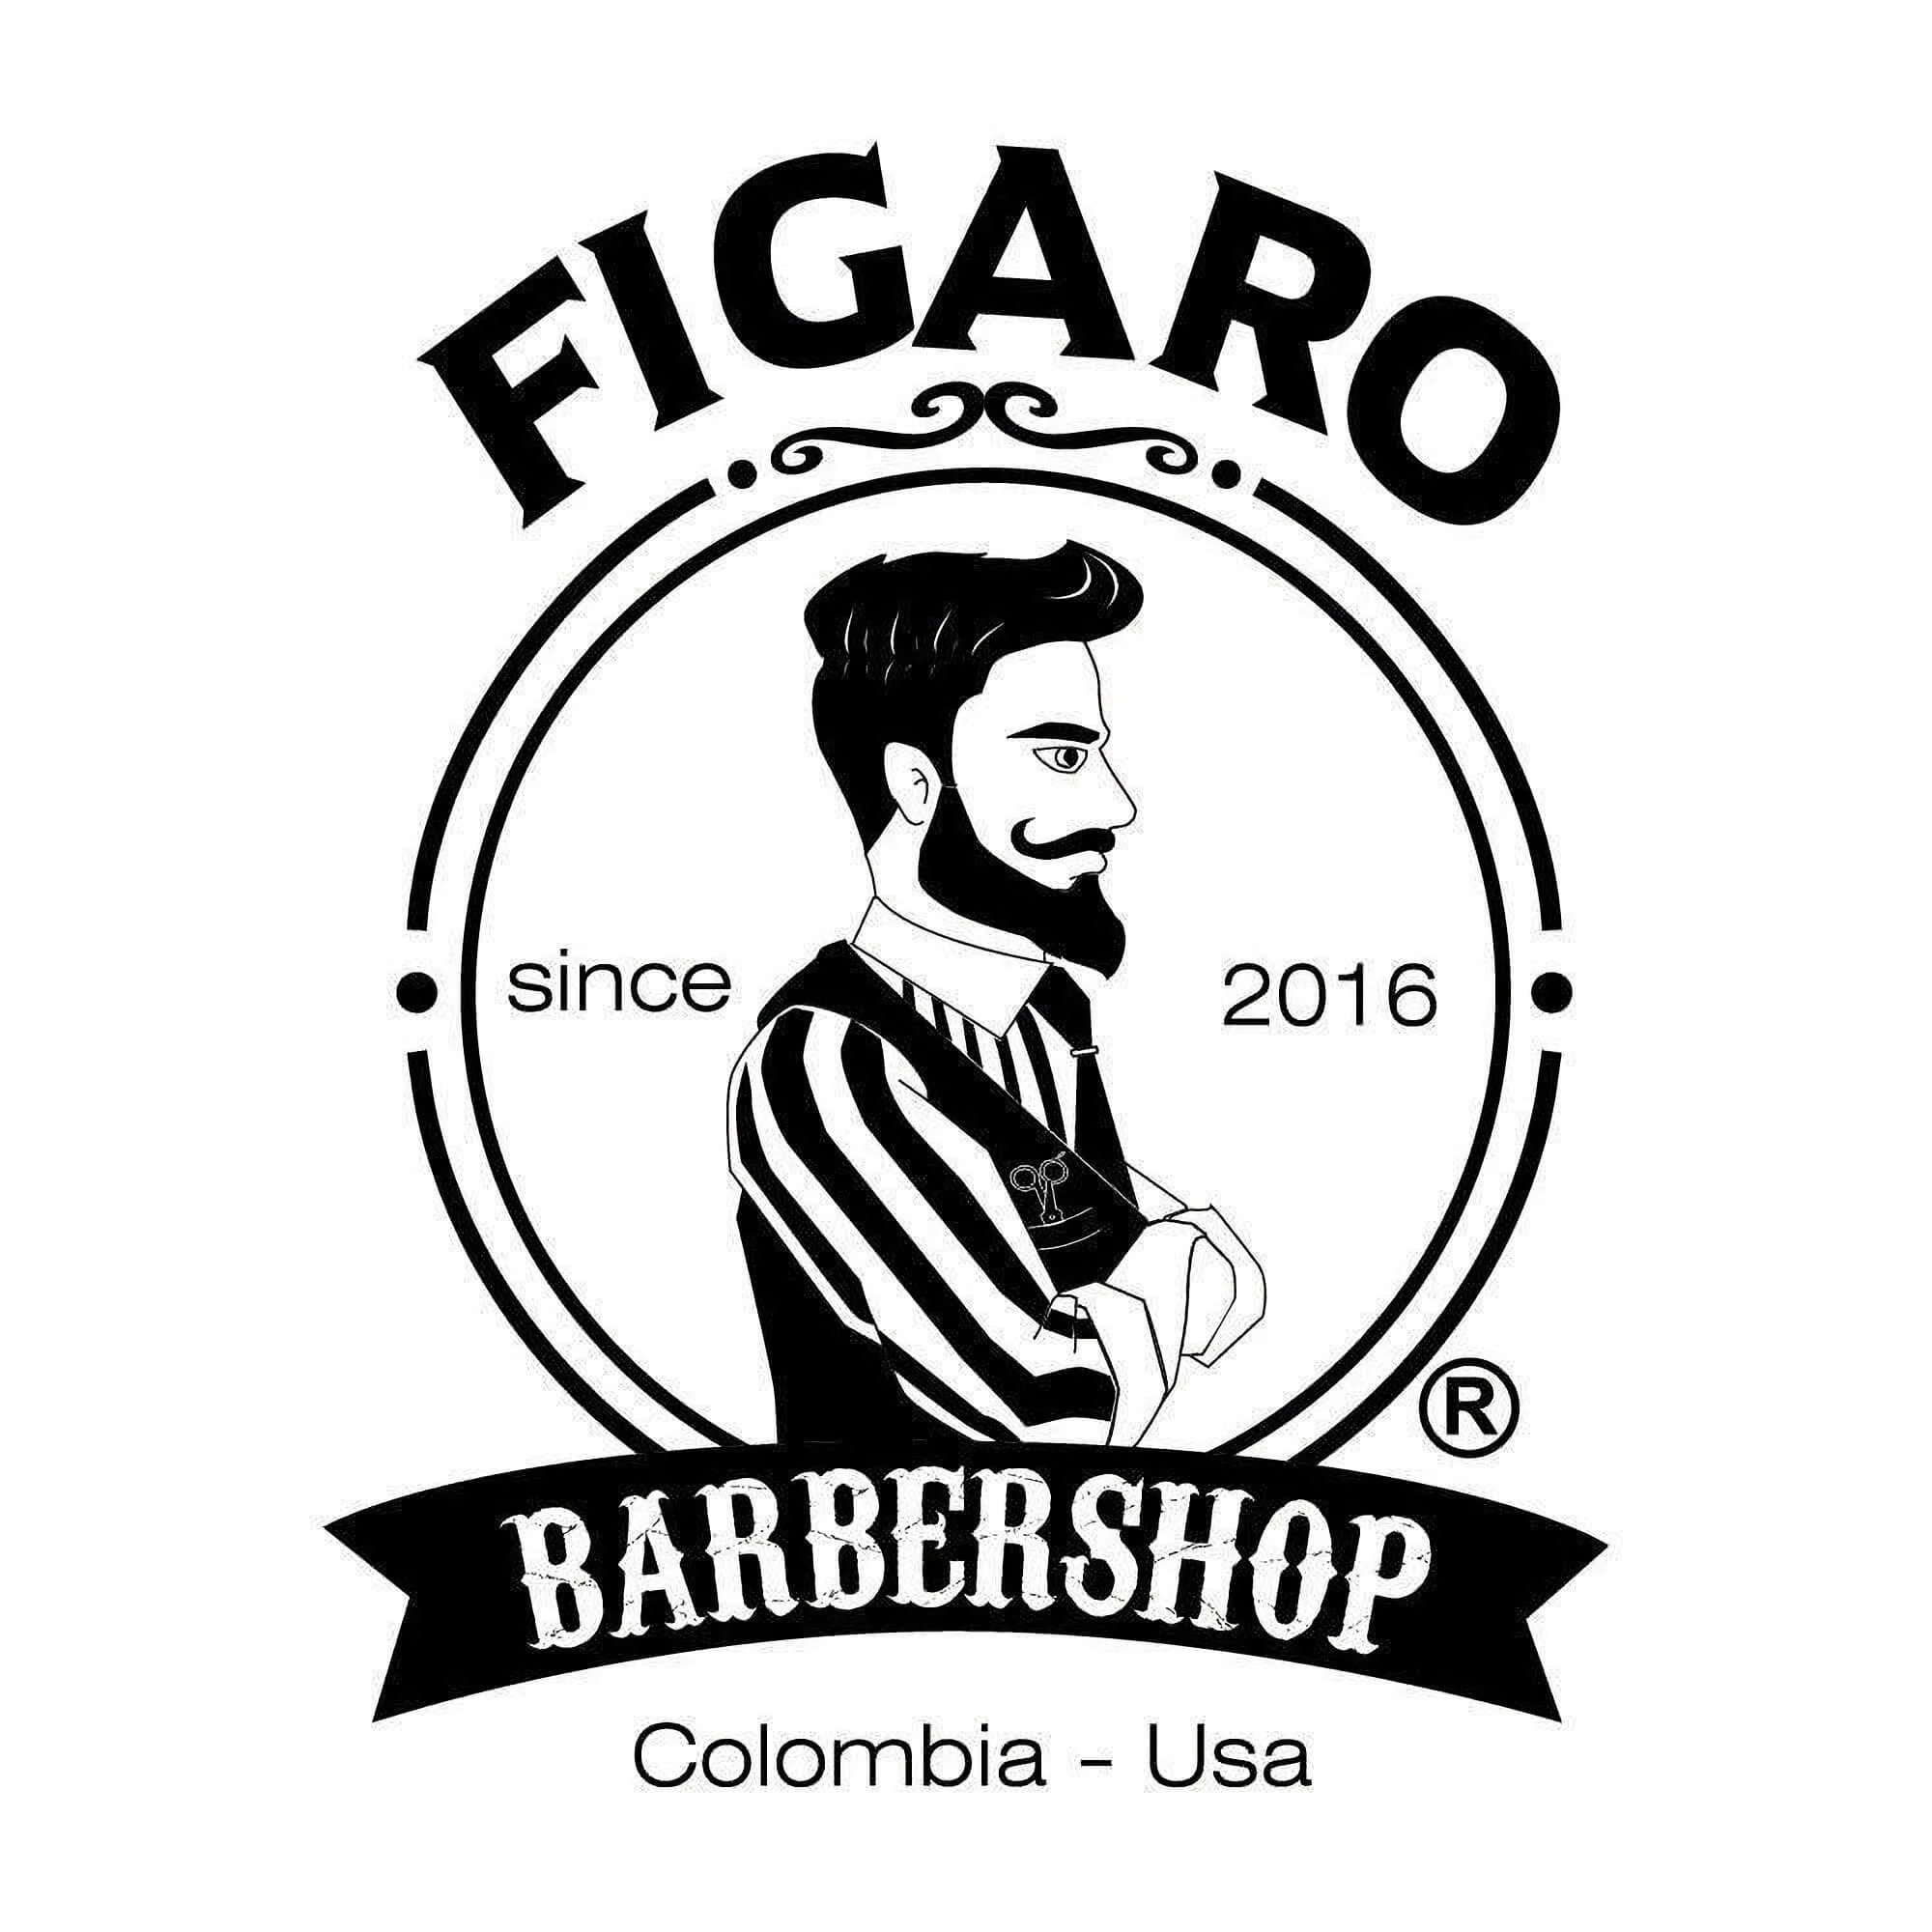 Barbería-figaro-barber-shop-6080